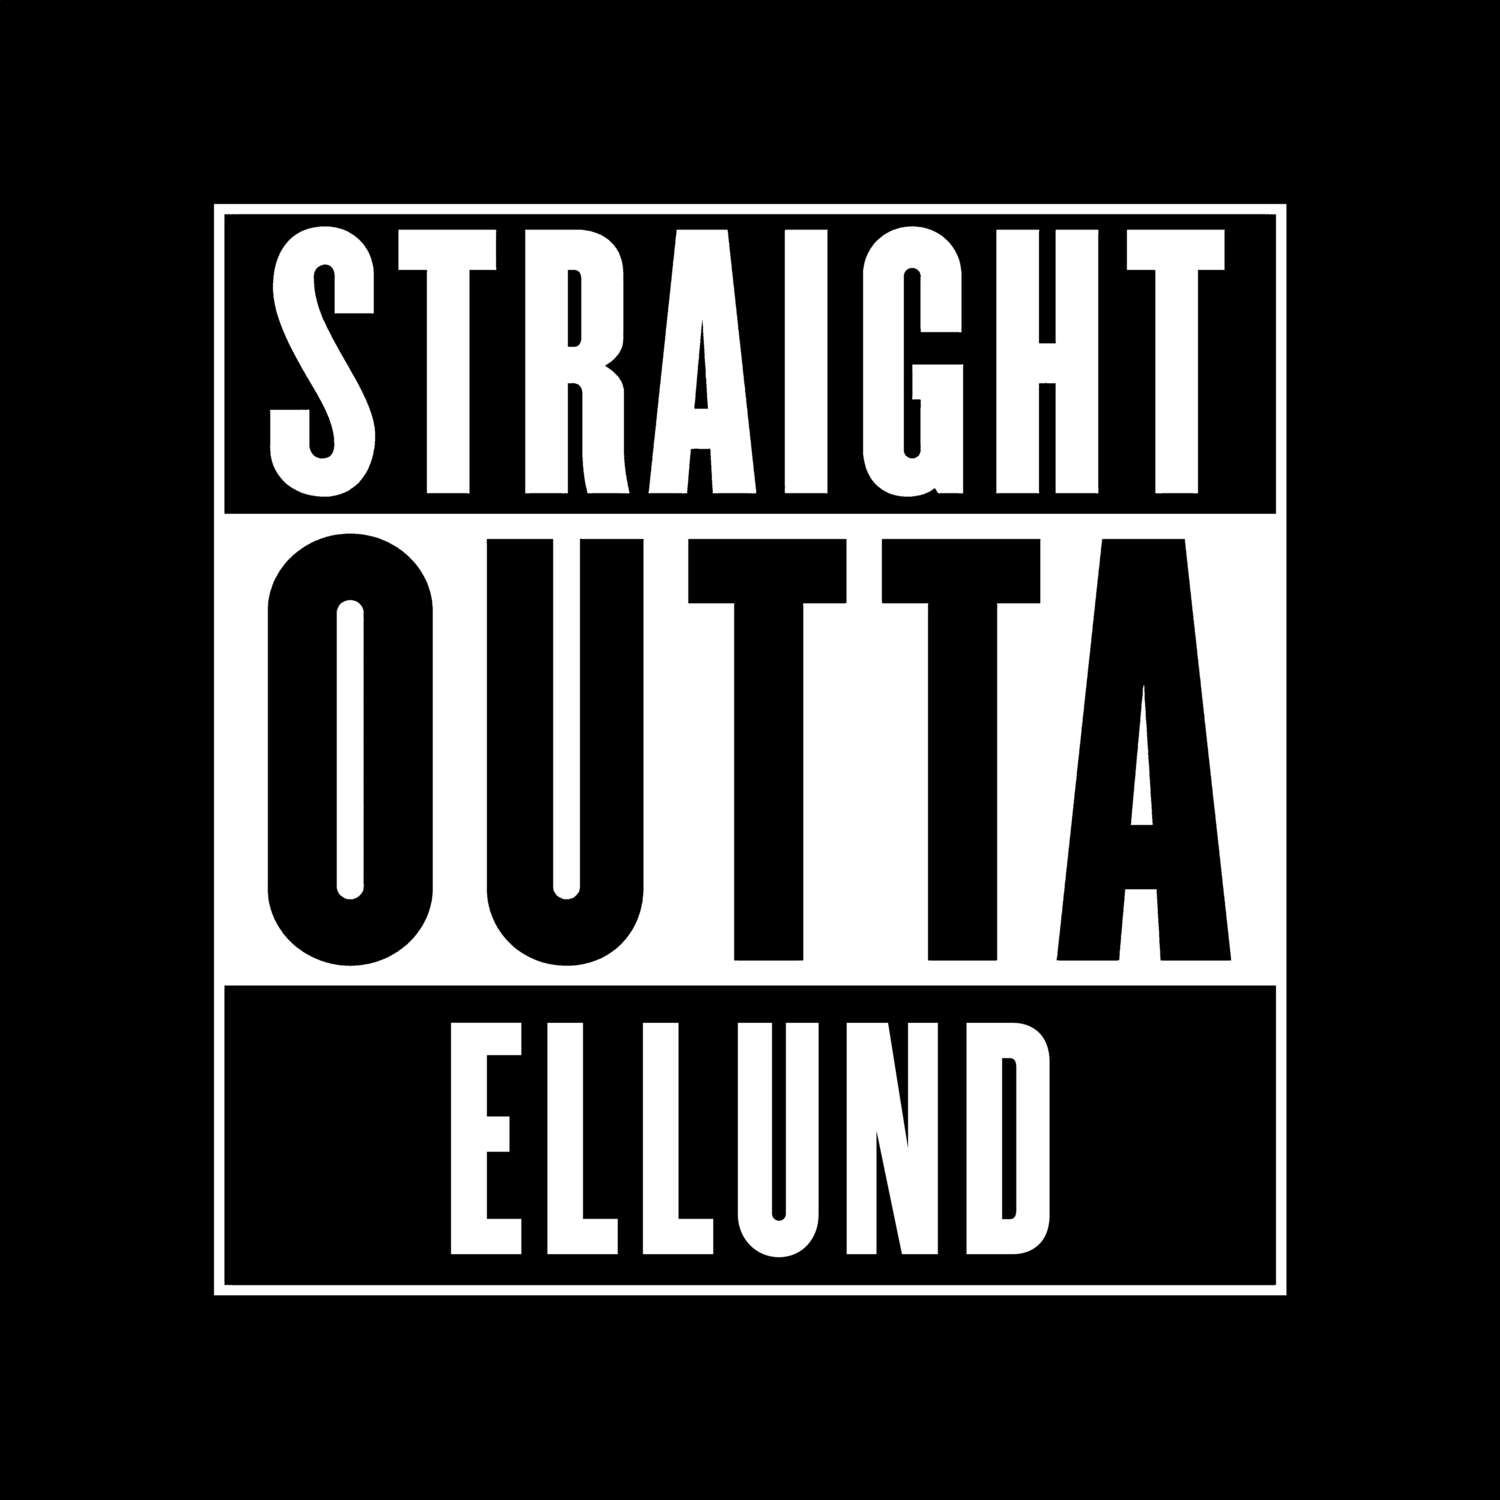 Ellund T-Shirt »Straight Outta«